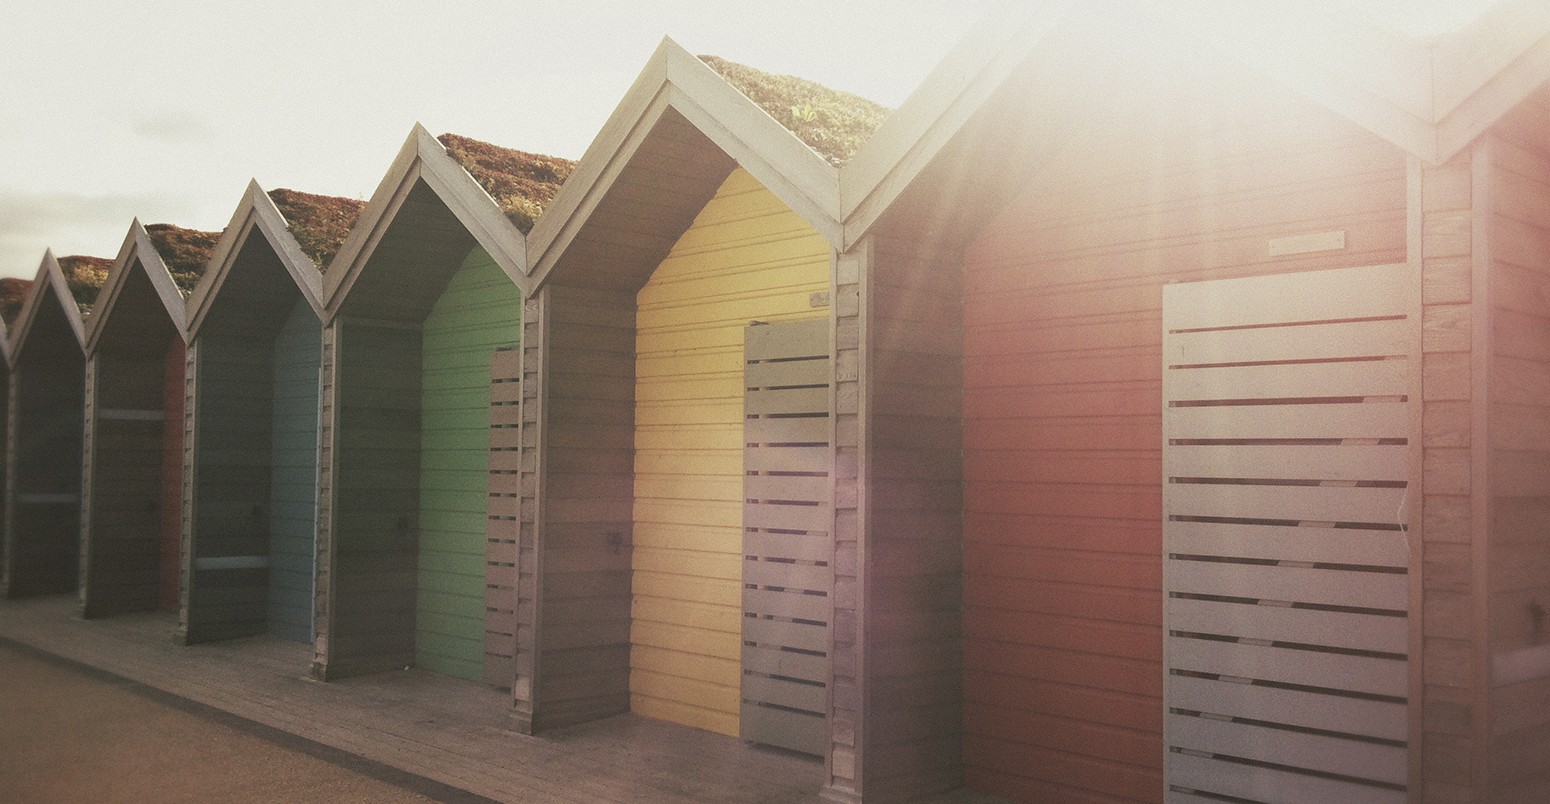 A row of colourful beach huts.